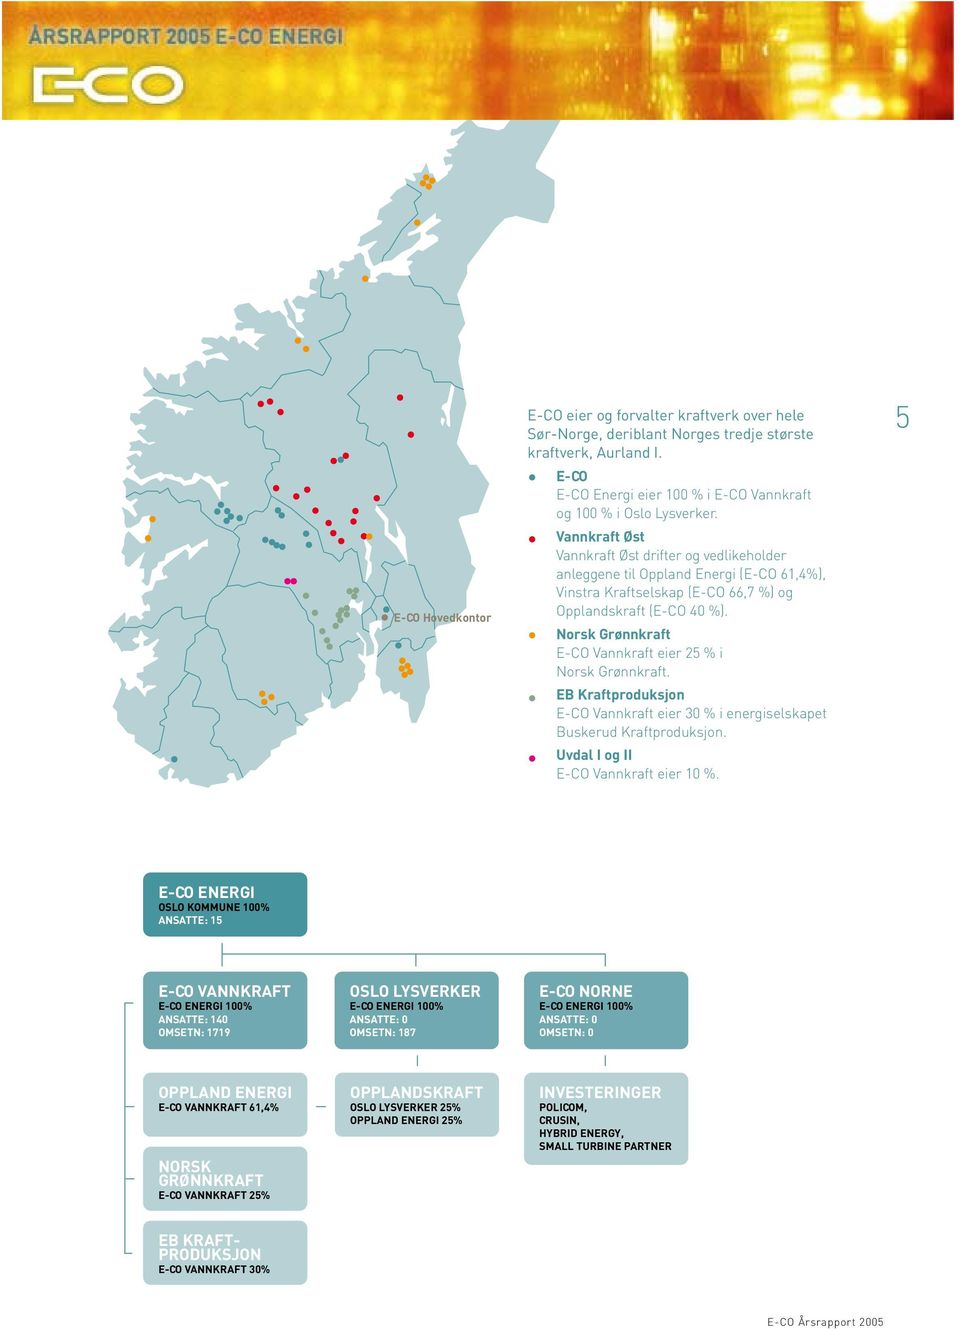 Vannkraft Øst Vannkraft Øst drifter og vedlikeholder anleggene til Oppland Energi (E-CO 61,4%), Vinstra Kraftselskap (E-CO 66,7 %) og